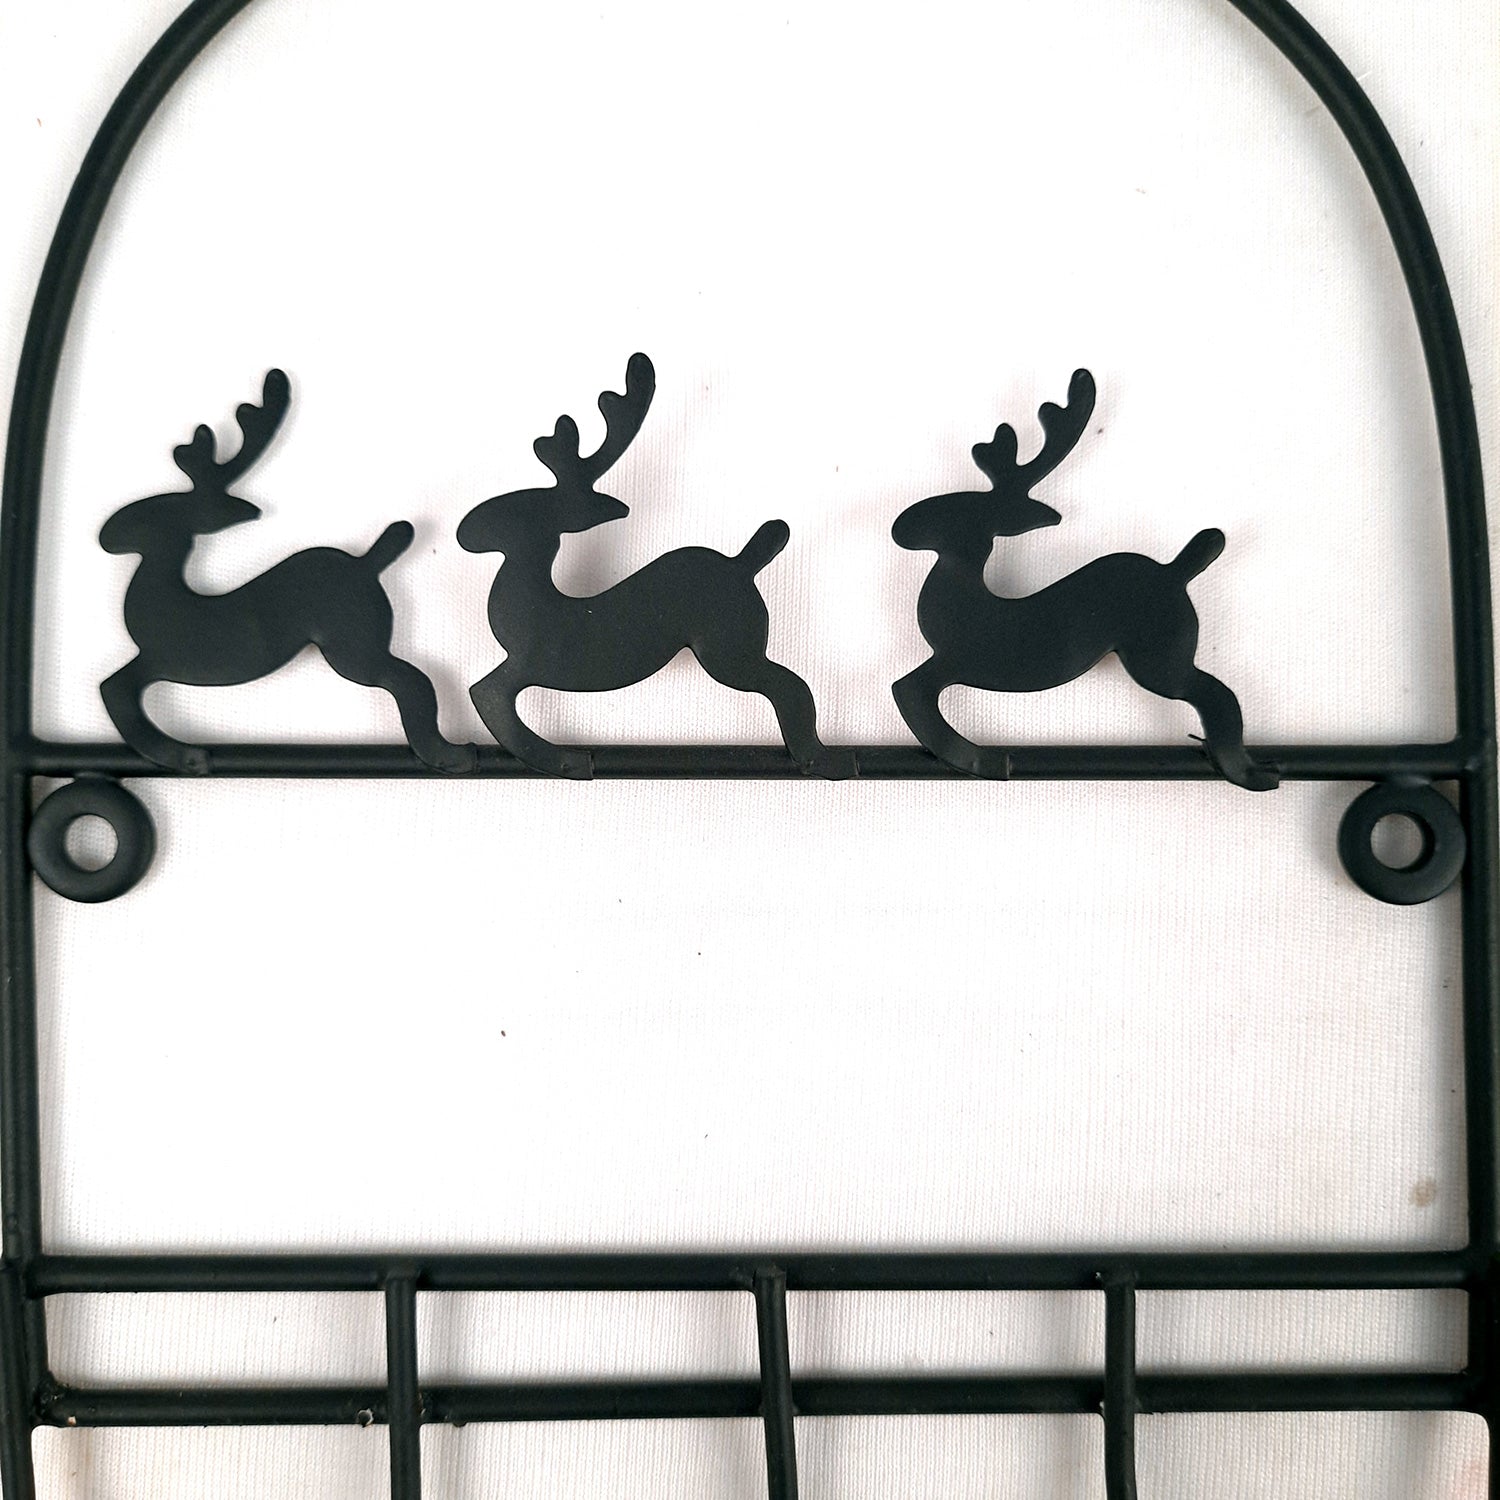 Key Holder Stands | Keys Hook Wall Hangers - Reindeer Design | Keys Organizer - For Home, Entrance, Office Decor & Gifts - 9 Inch (5 Hooks) - Apkamart #Style_Pack of 2